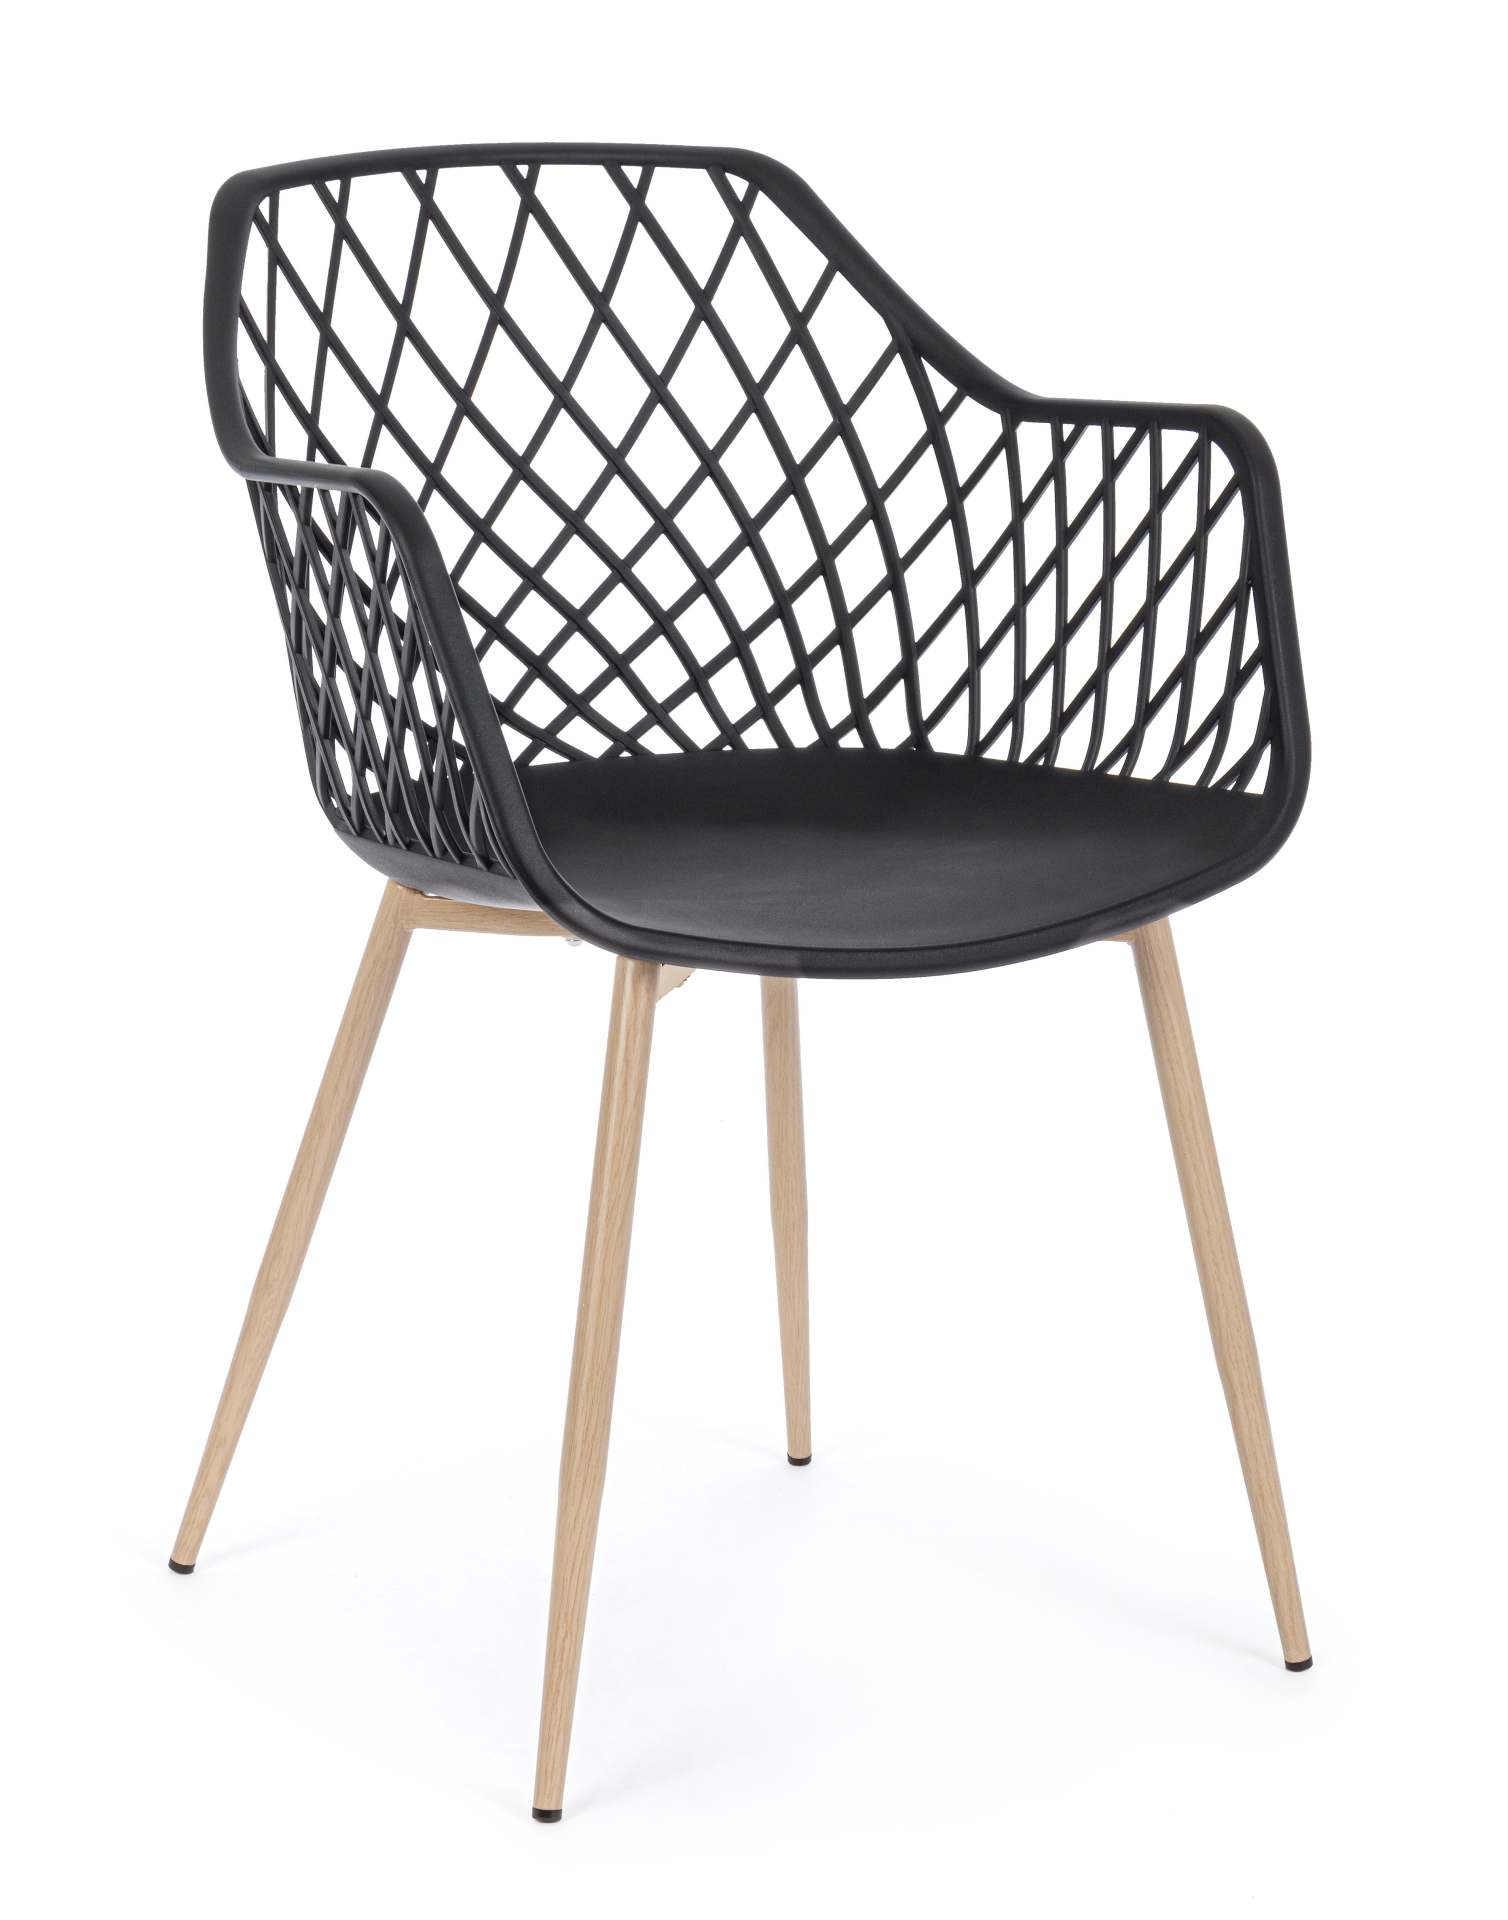 Der Stuhl Optik wurde aus Kunststoff gefertigt, welcher einen schwarzen Farbton besitzt. Das Gestell ist aus Metall und hat eine Holz-Optik. Das Design des Stuhls ist modern gehalten. Die Sitzhöhe beträgt 44 cm.